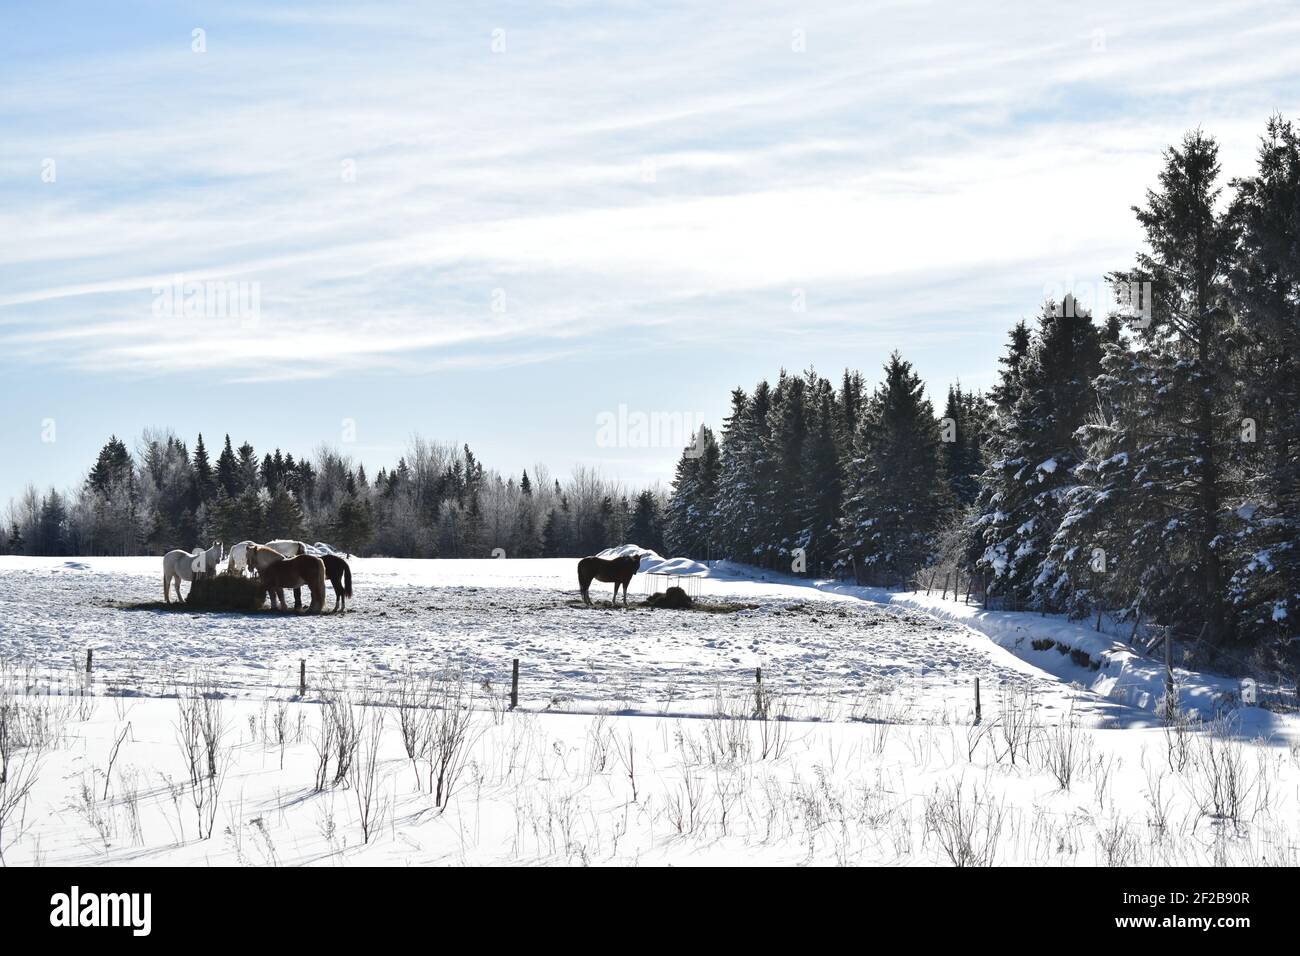 Des chevaux en hiver, Québec Foto de stock